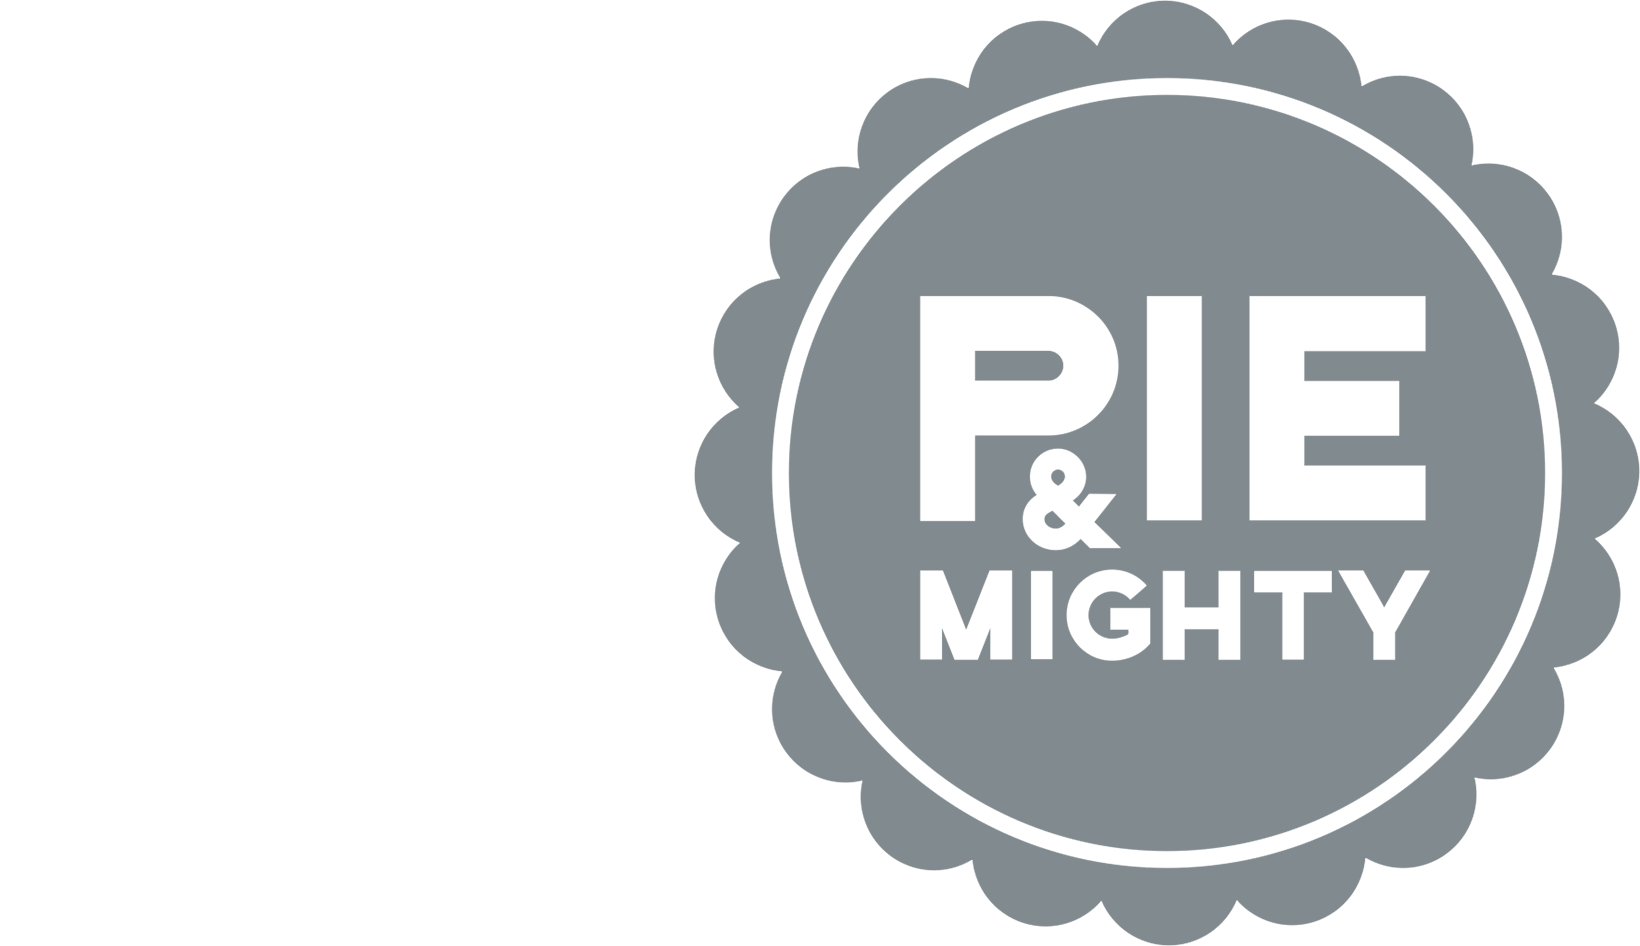 Pie and Mighty logo monochrome